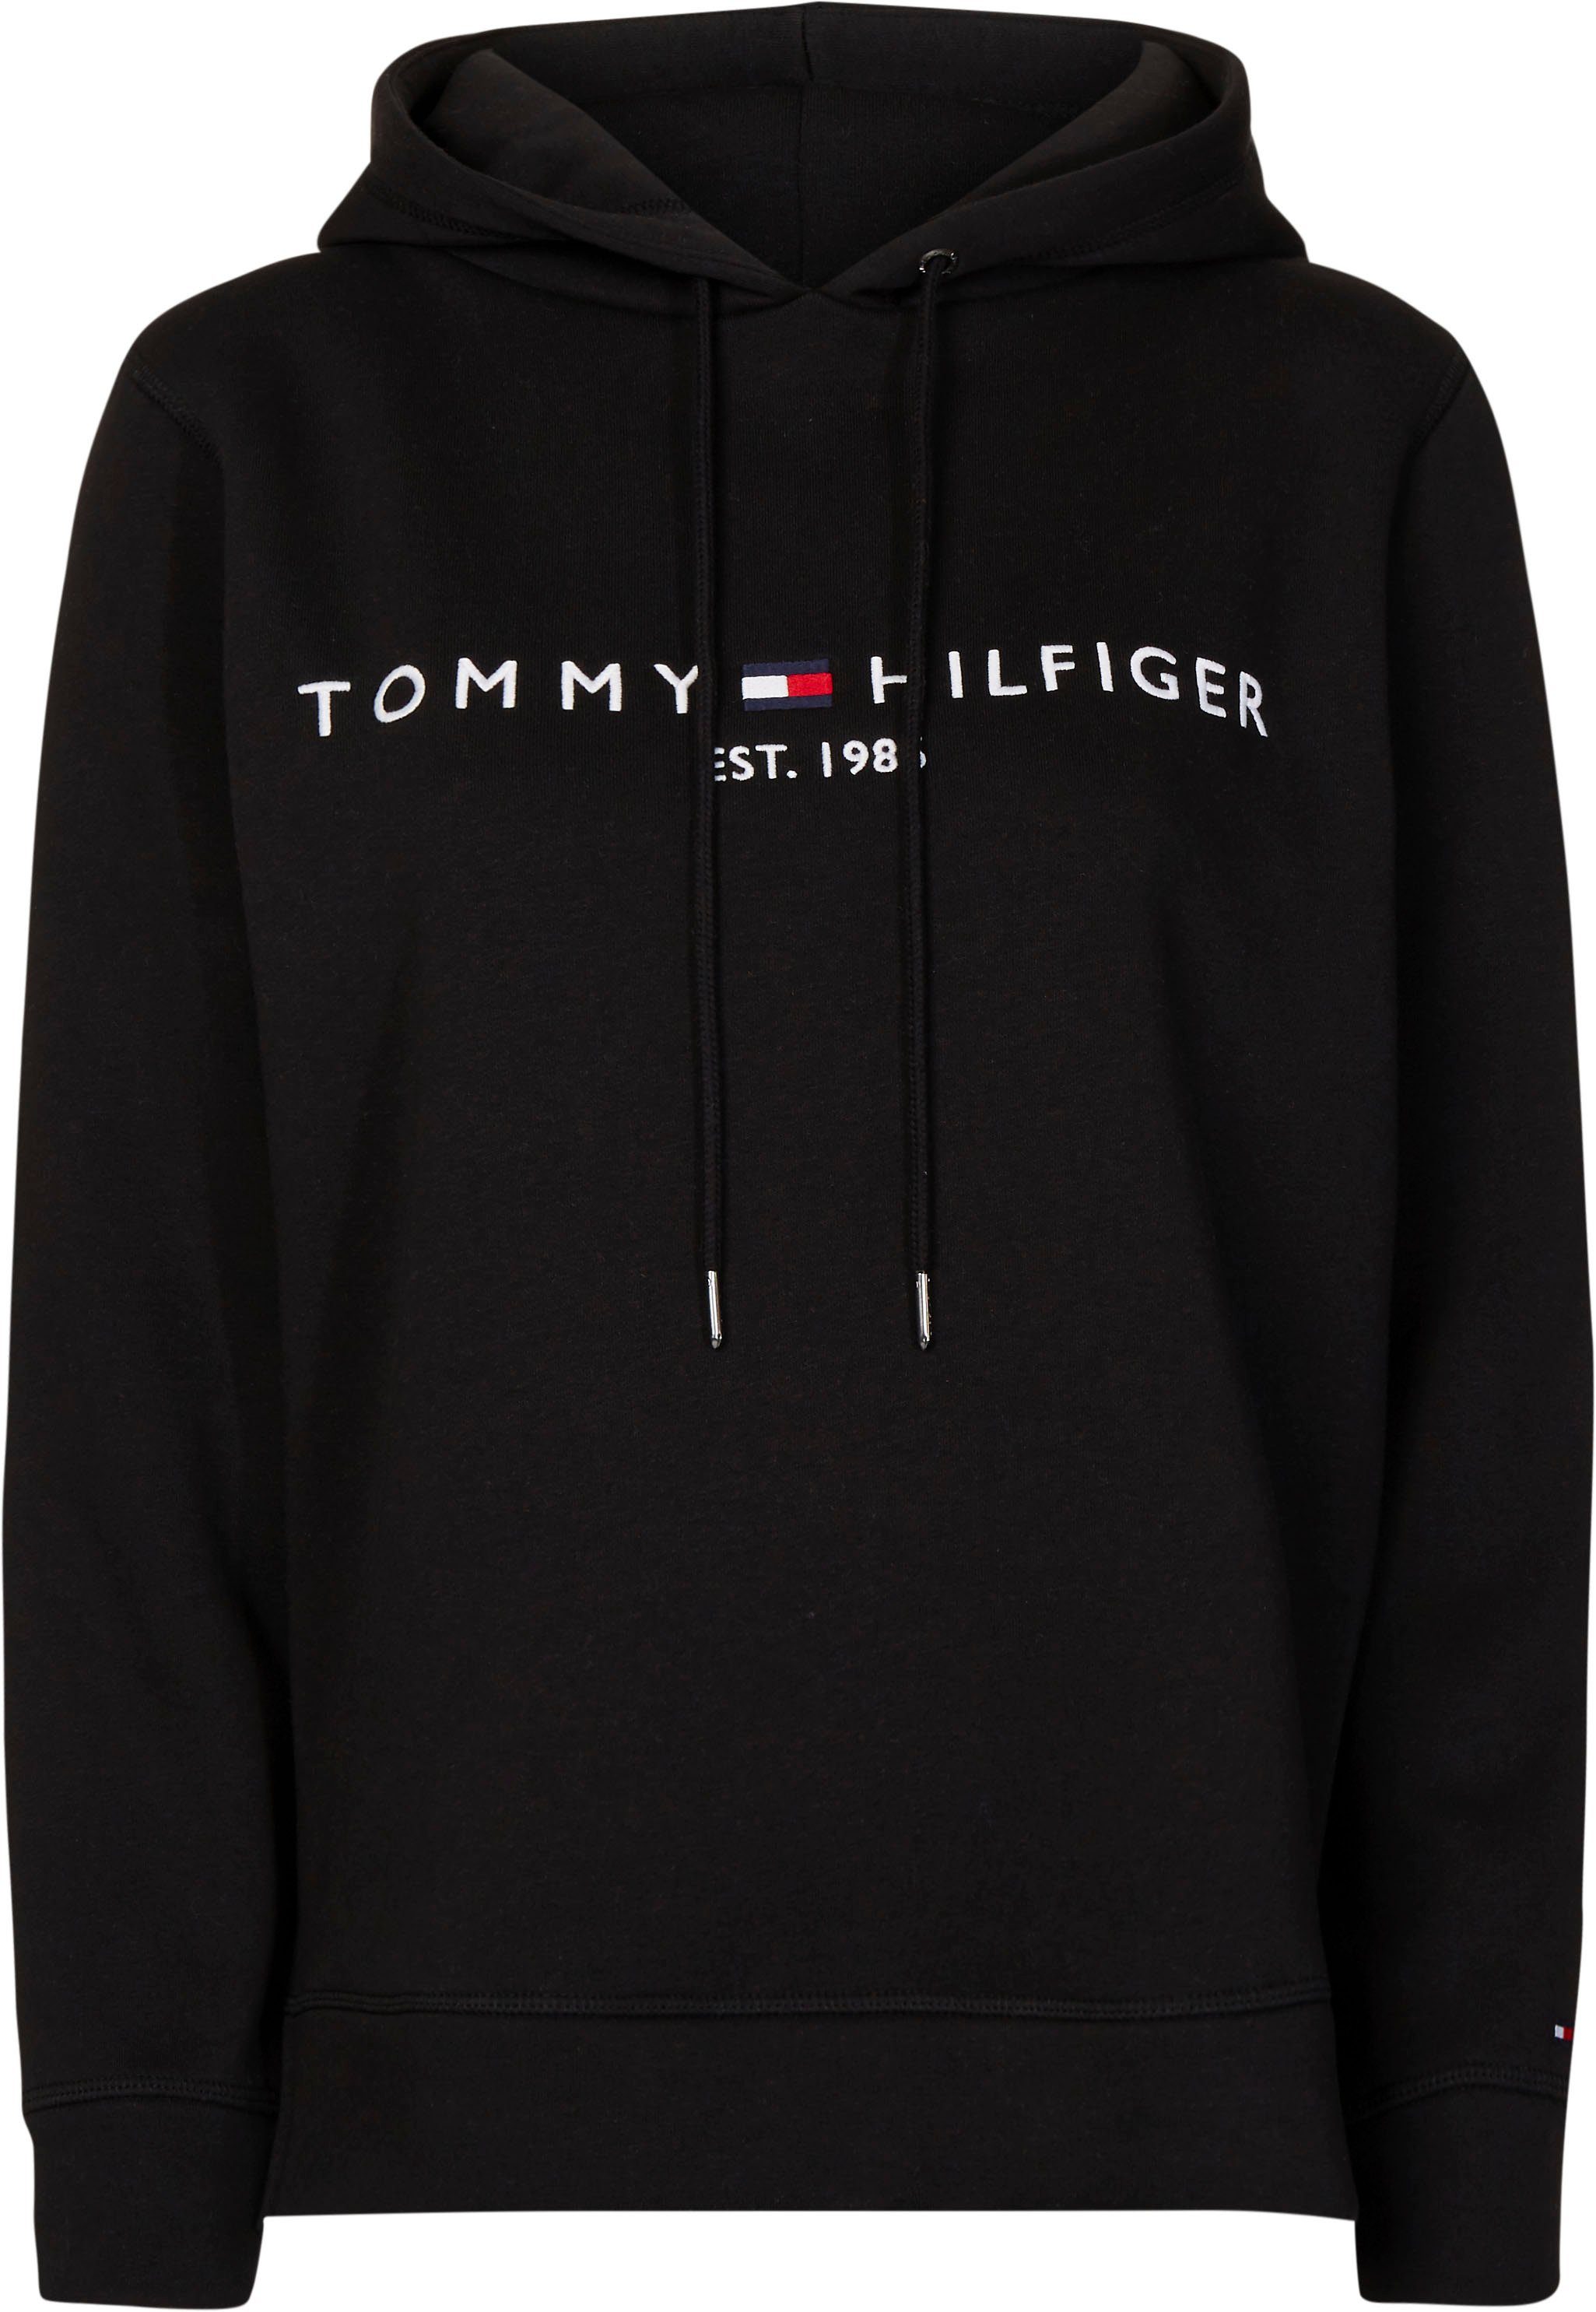 Tommy Hilfiger Damenmode & Damen-Bekleidung online kaufen | OTTO